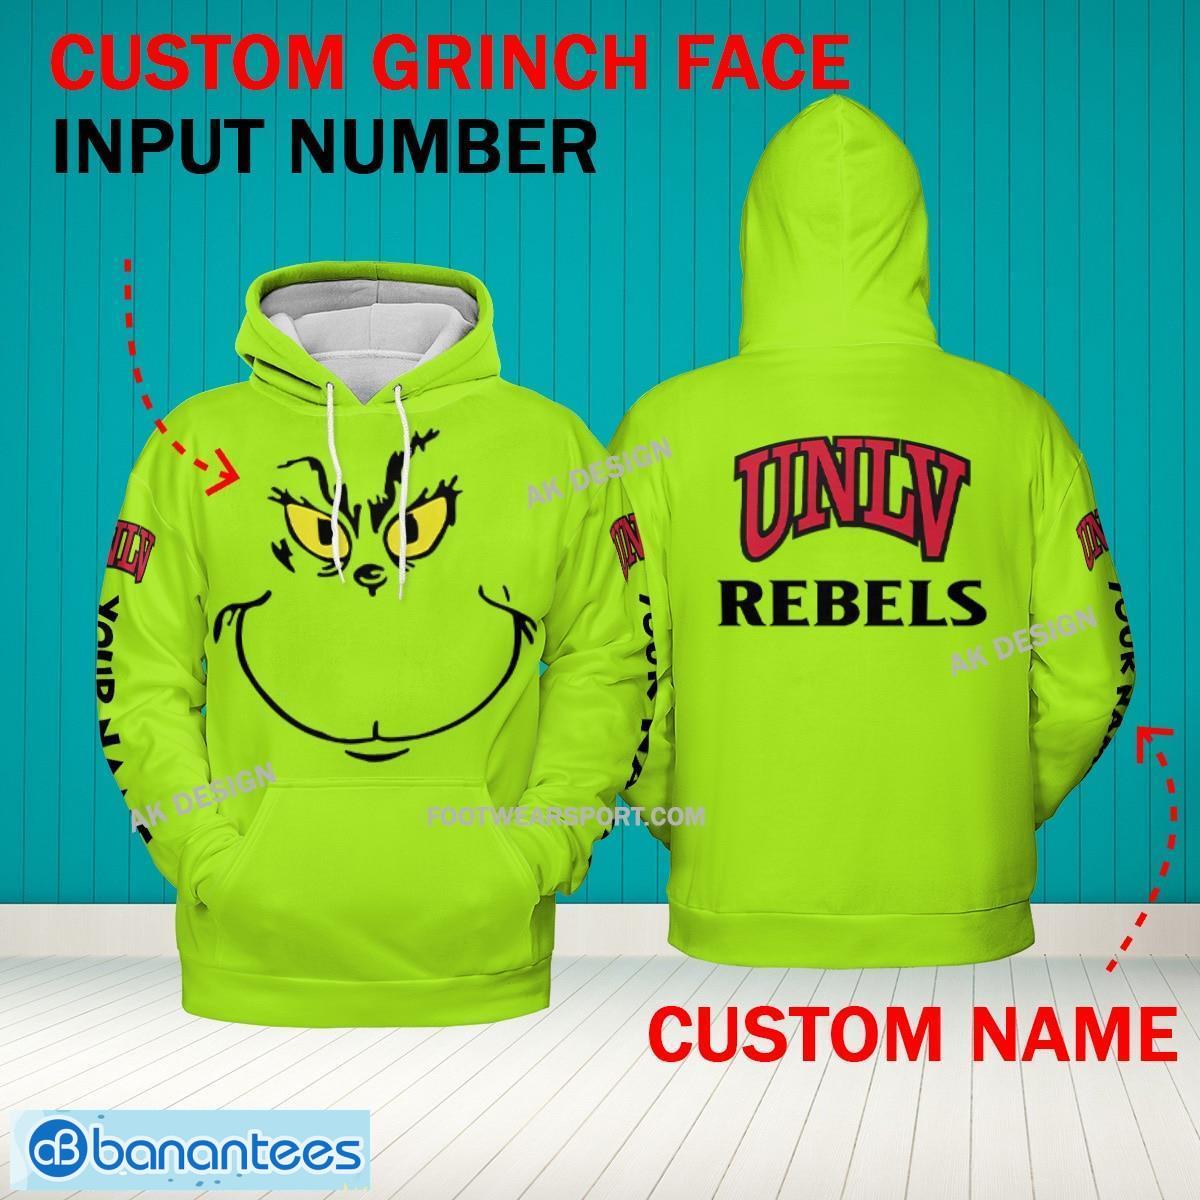 Grinch Face UNLV Rebels 3D Hoodie, Zip Hoodie, Sweater Green AOP Custom Number And Name - Grinch Face NCAA UNLV Rebels 3D Hoodie